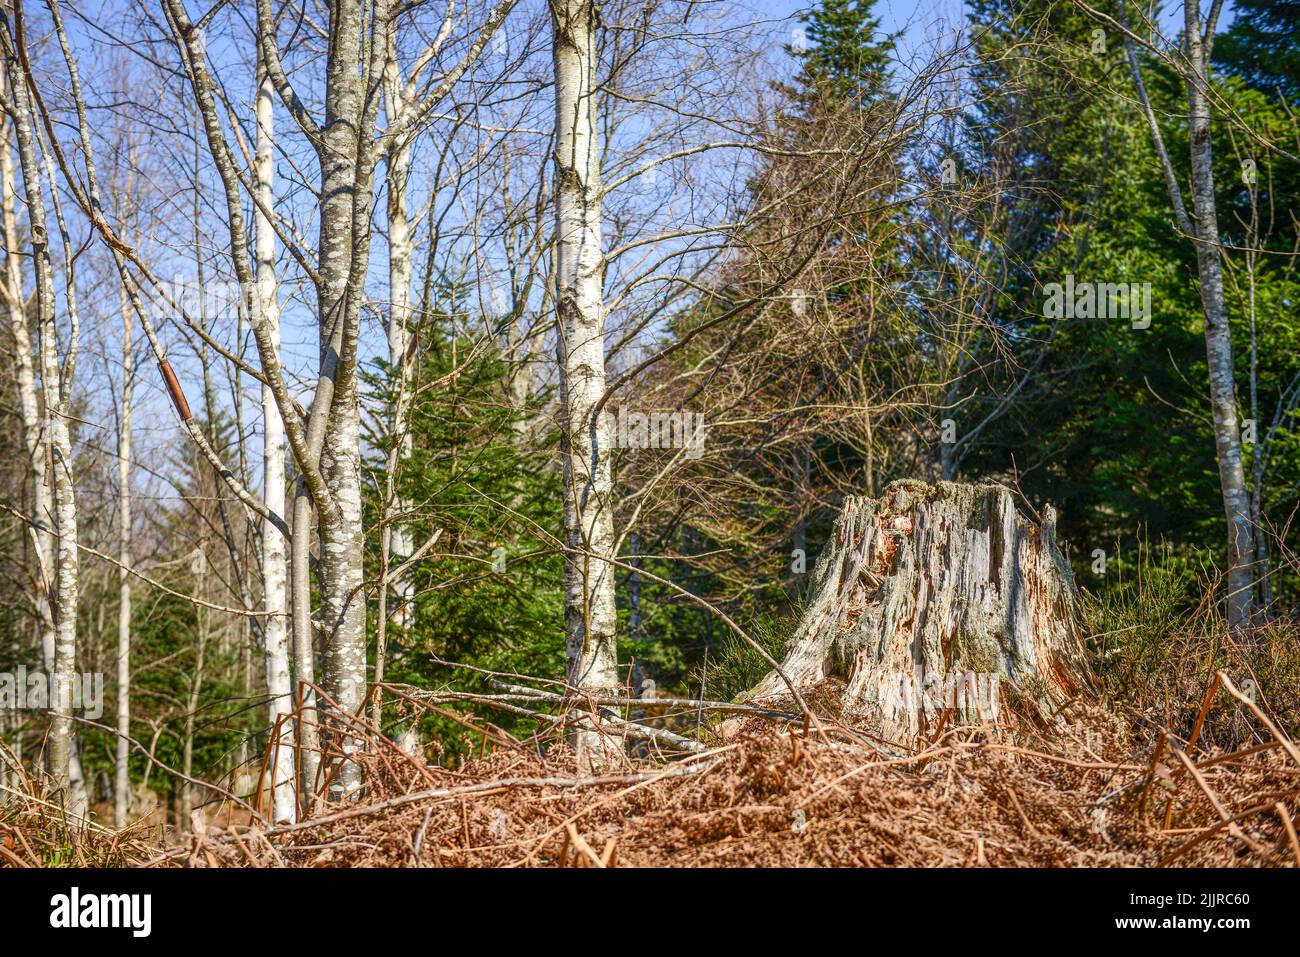 Un paesaggio naturale di una foresta con alberi di vario tipo, un albero abbattuto e rami caduti Foto Stock